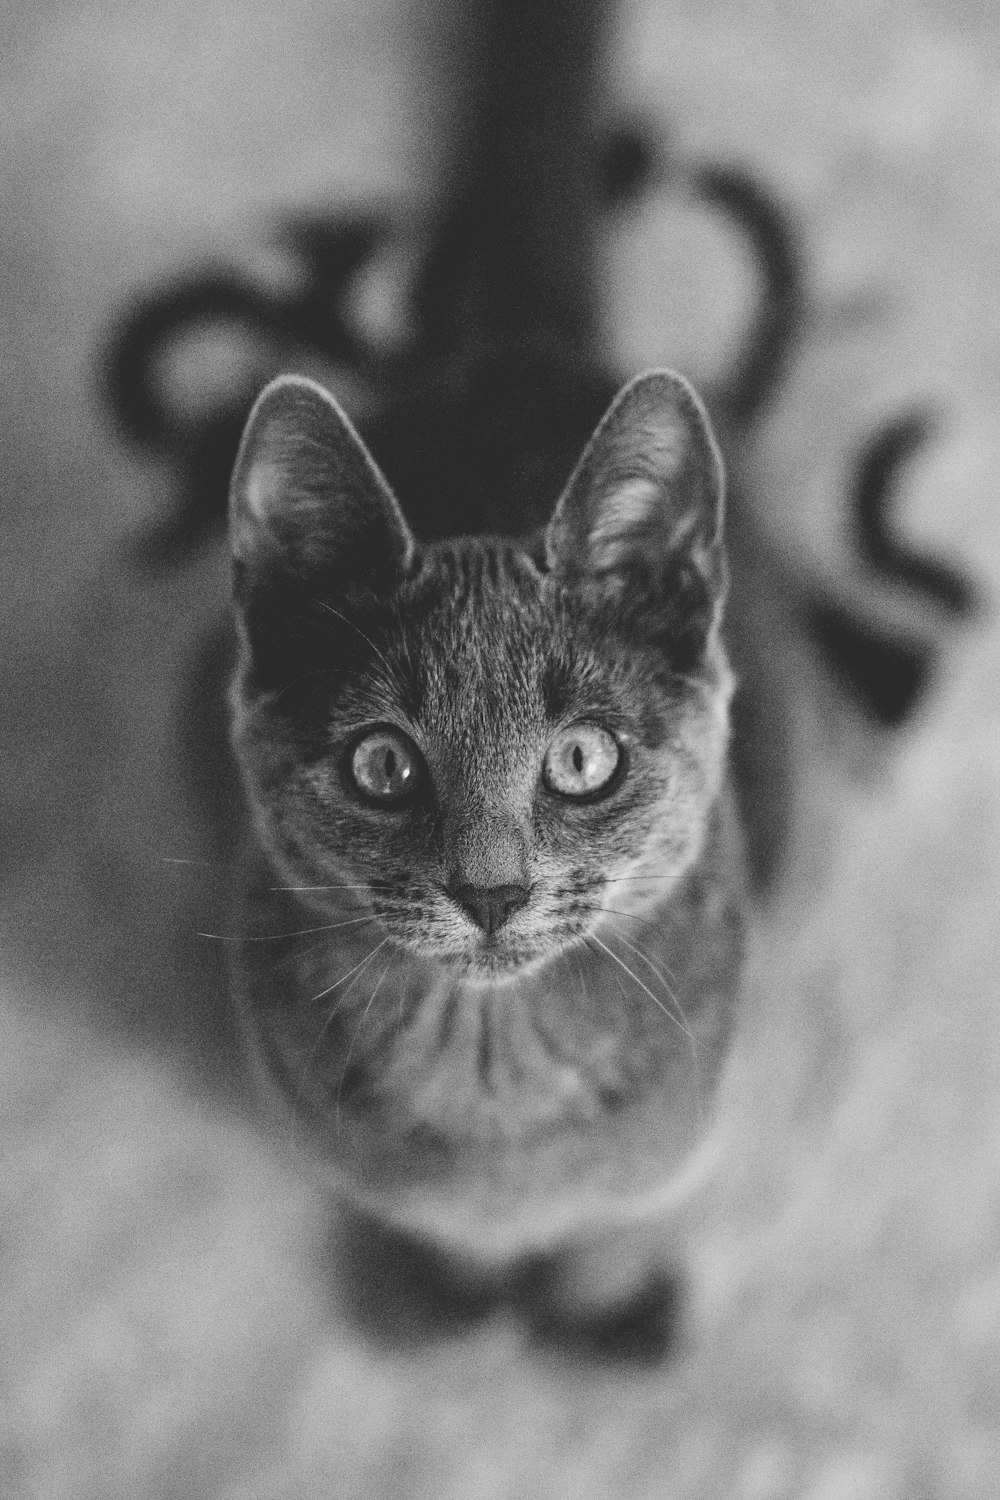 Una foto en blanco y negro de un gato mirando hacia arriba